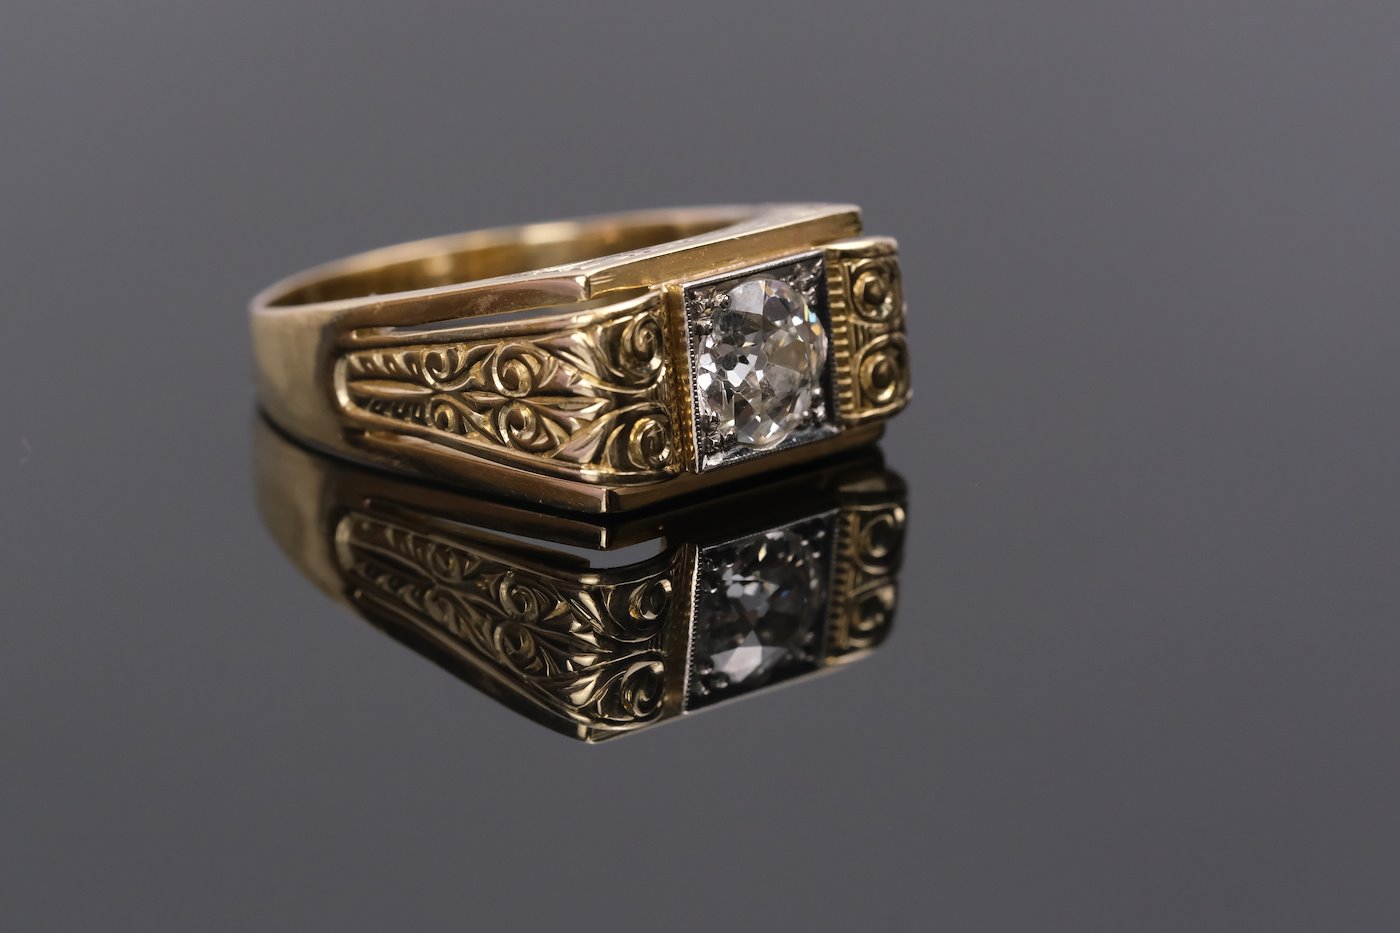 .. - Luxusní pánský prsten s diamantem 1,20 ct, zlato 585/1000, značeno platnou puncovní značkou "labuť", hrubá hmotnost 8,80 g